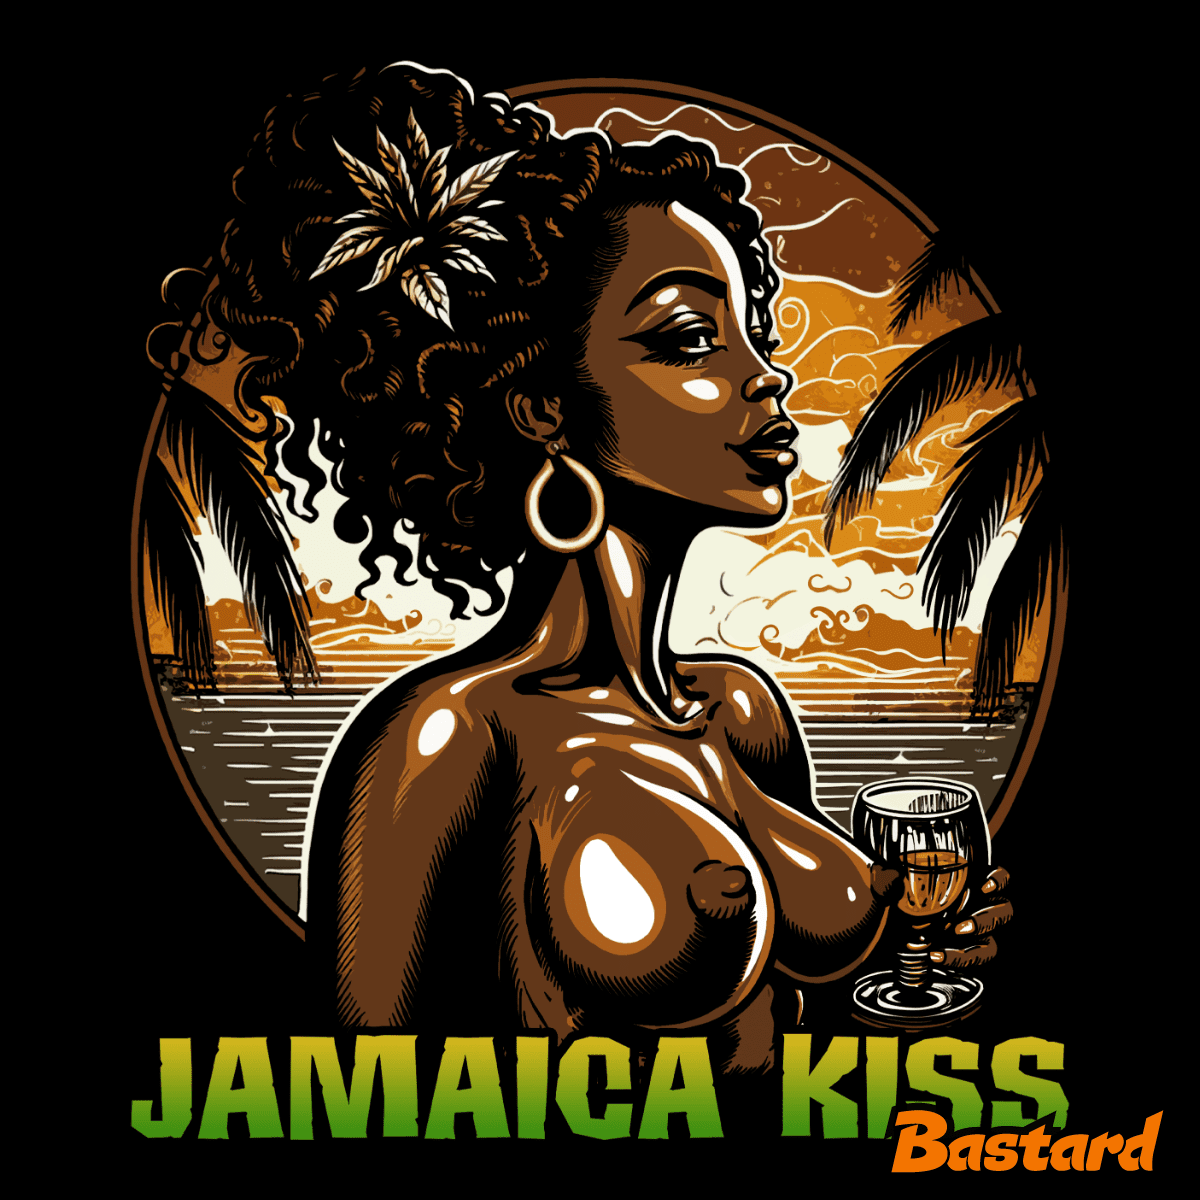 Jamaica kiss